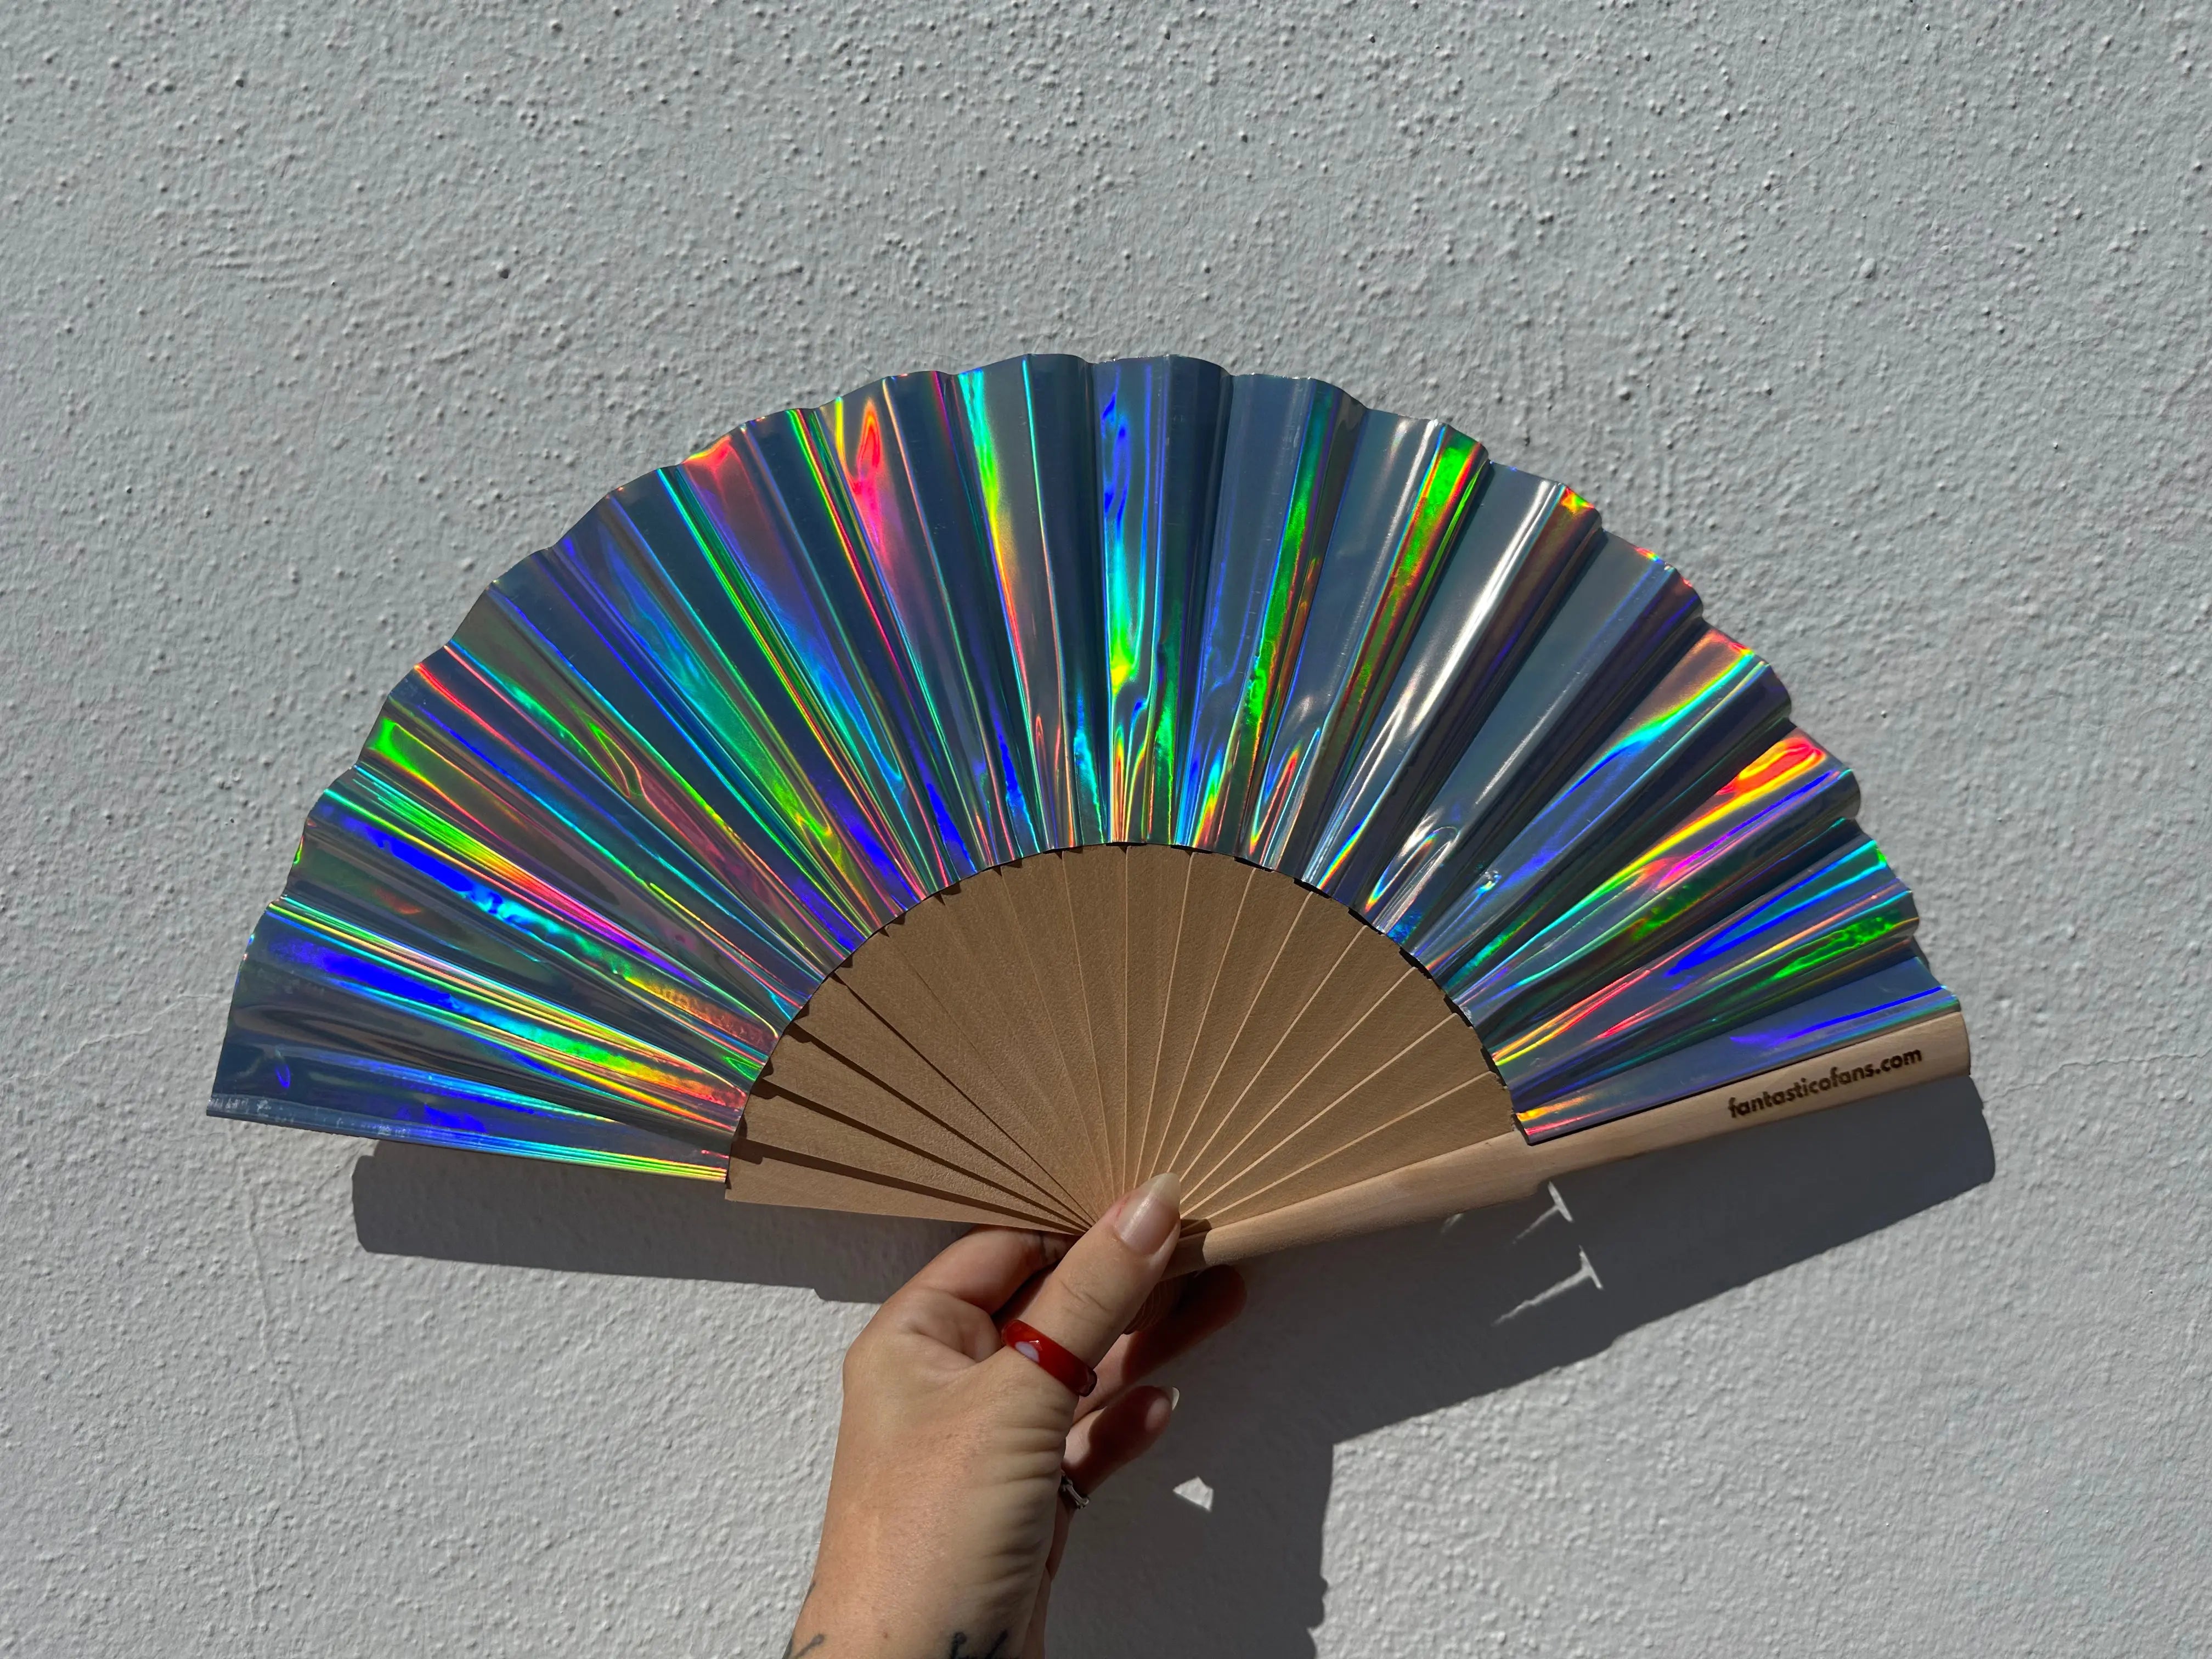 Hologram Fan Silver mini - Fantastico Fans